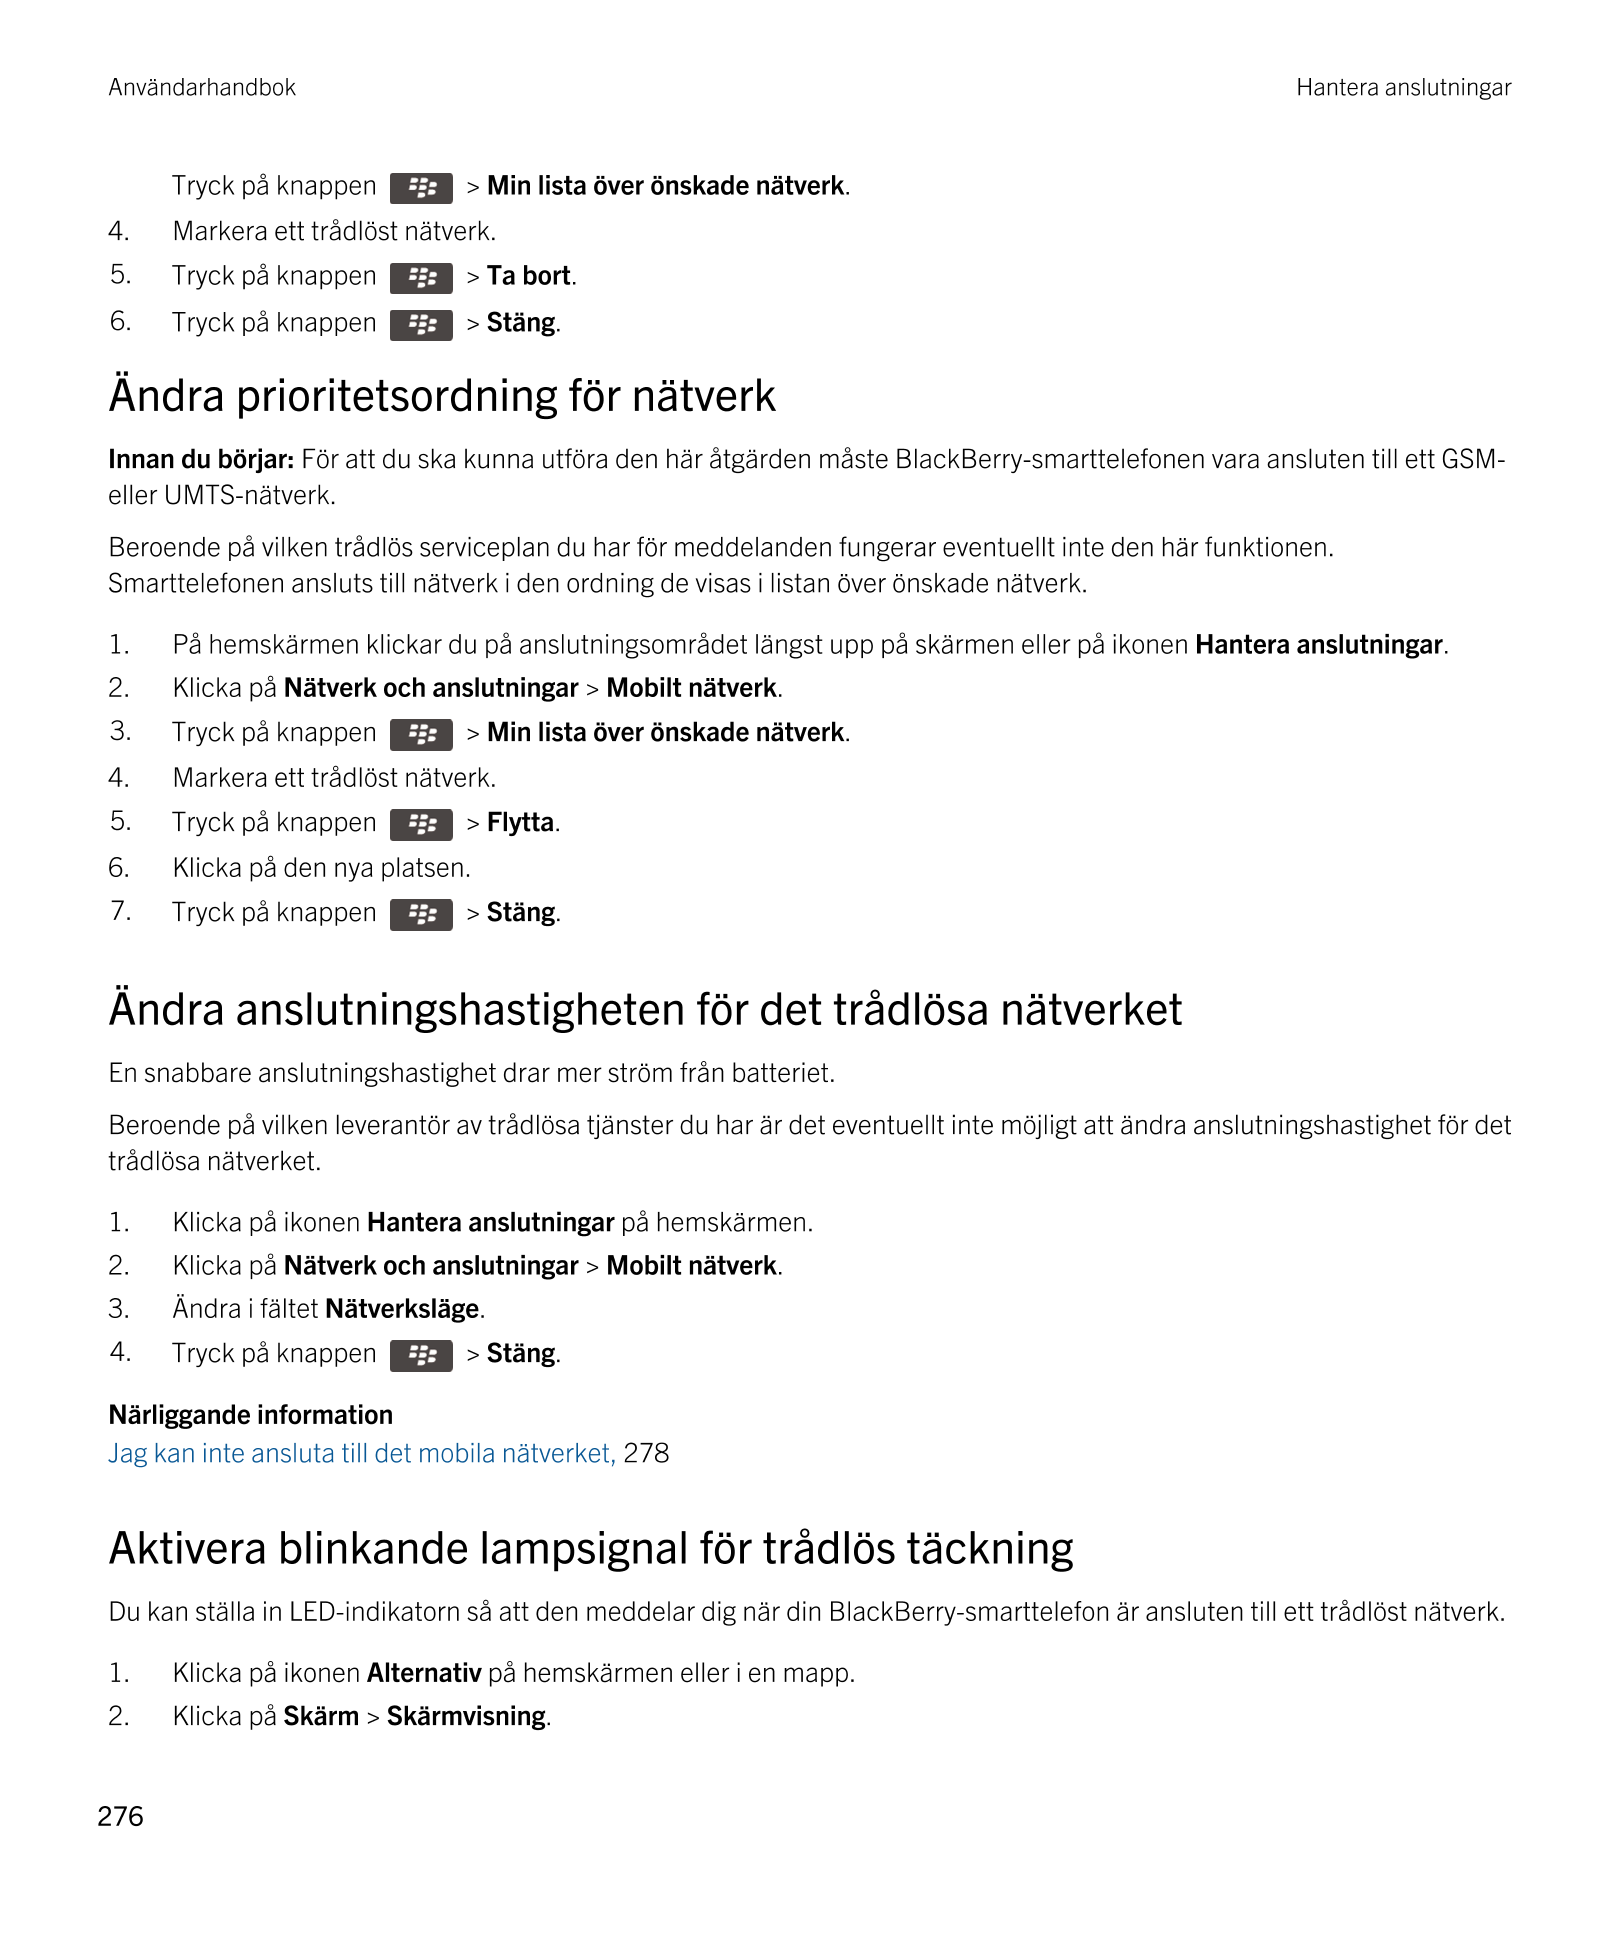 Användarhandbok Hantera anslutningar
Tryck på knappen    >  Min lista över önskade nätverk. 
4. Markera ett trådlöst nätverk.
5.